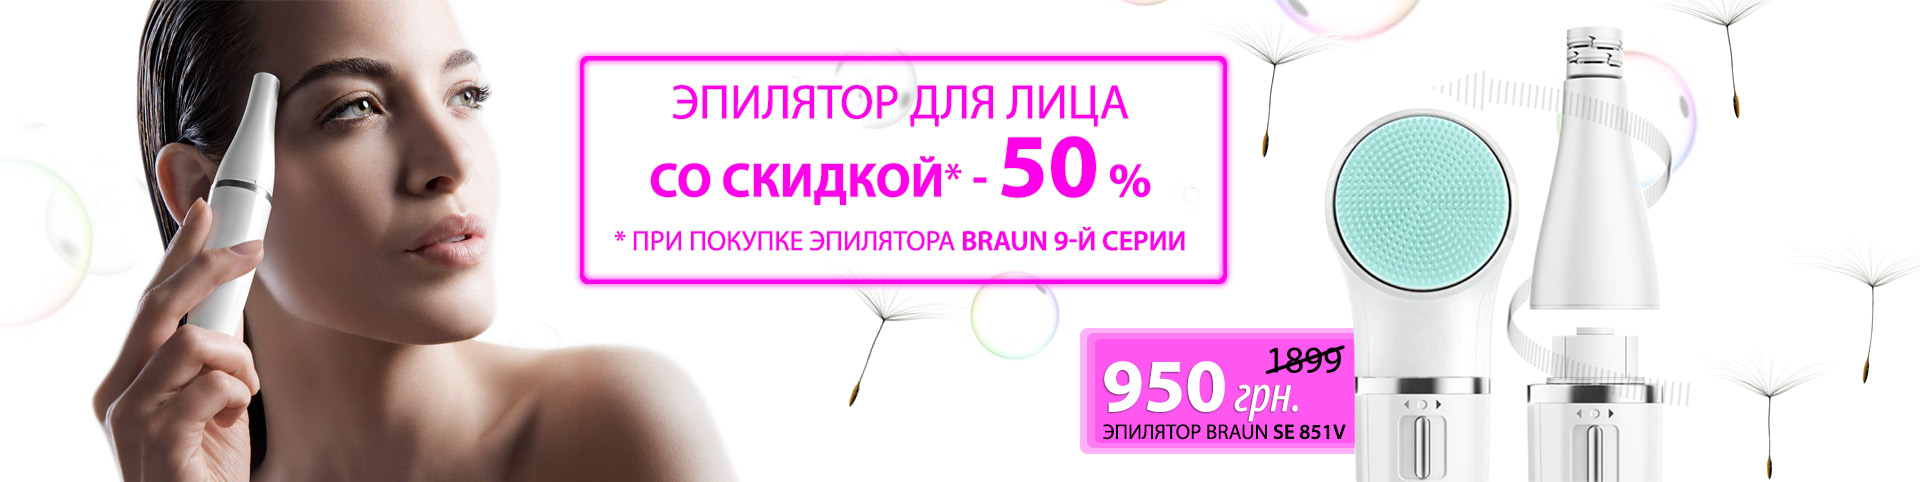 При покупке эпилятора Braun Silk-epil 9, скидка 50% на эпилятор для лица SE 851v